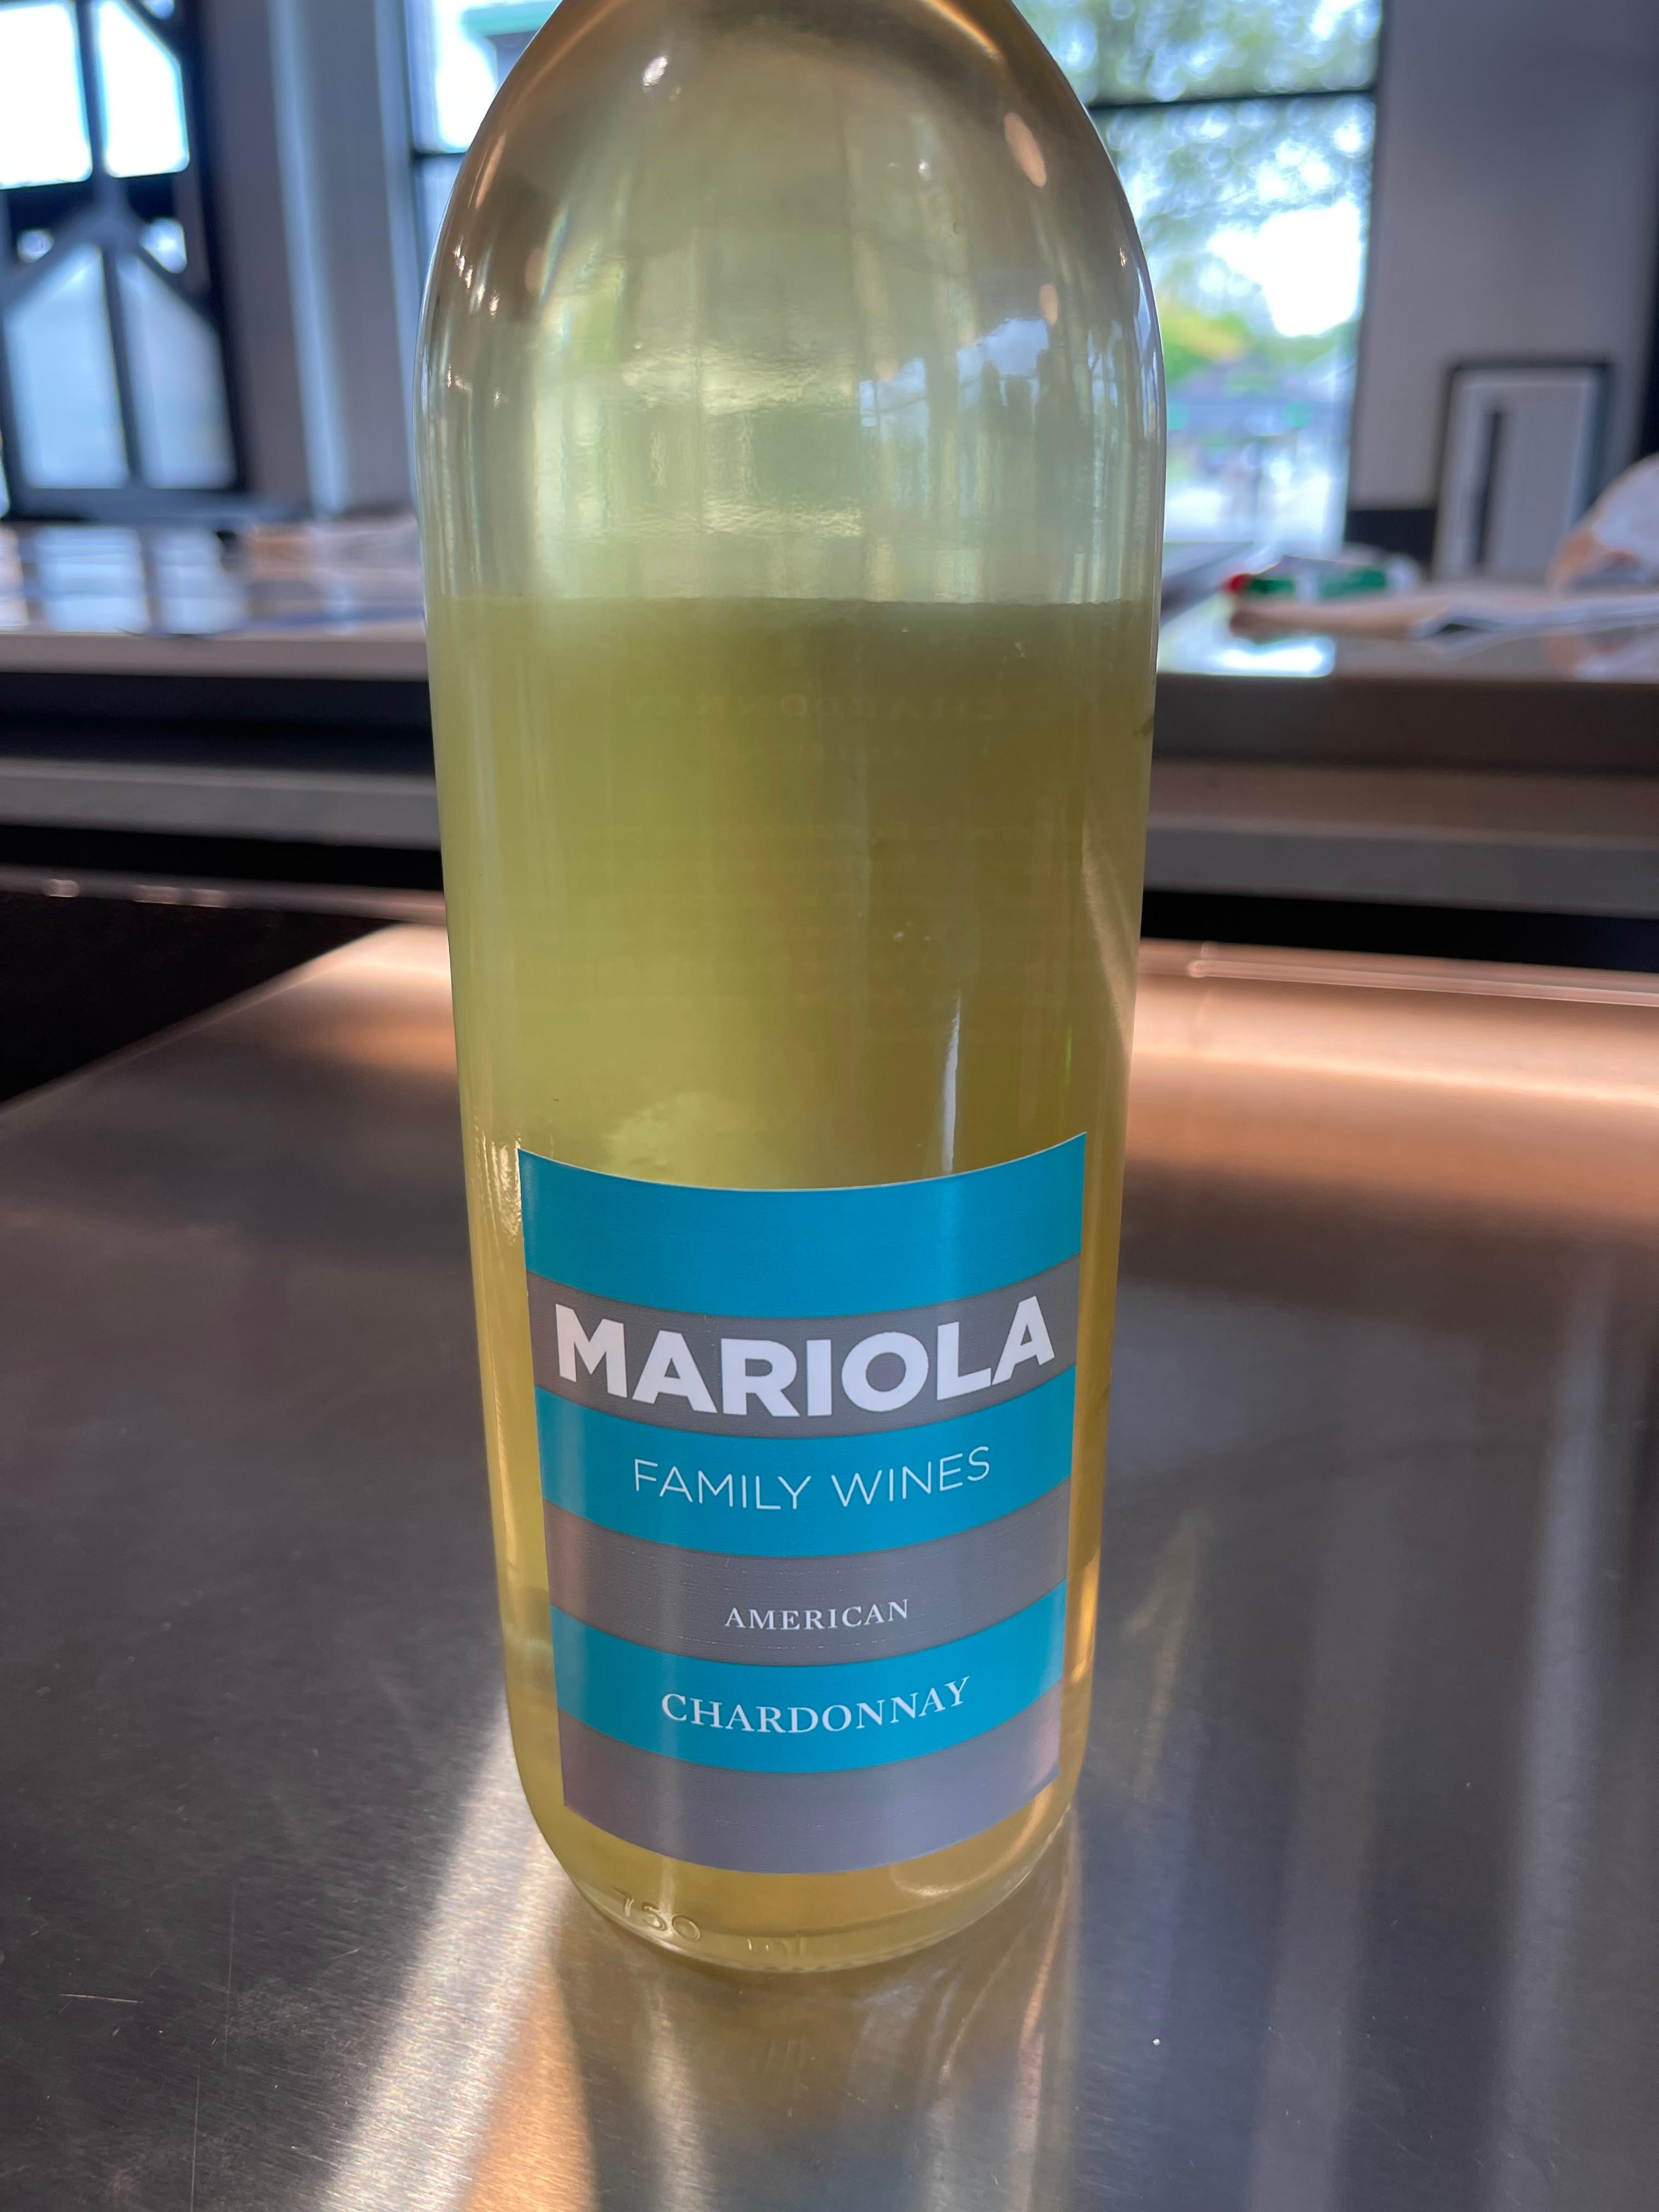 Mariola Family Wines Chardonnay